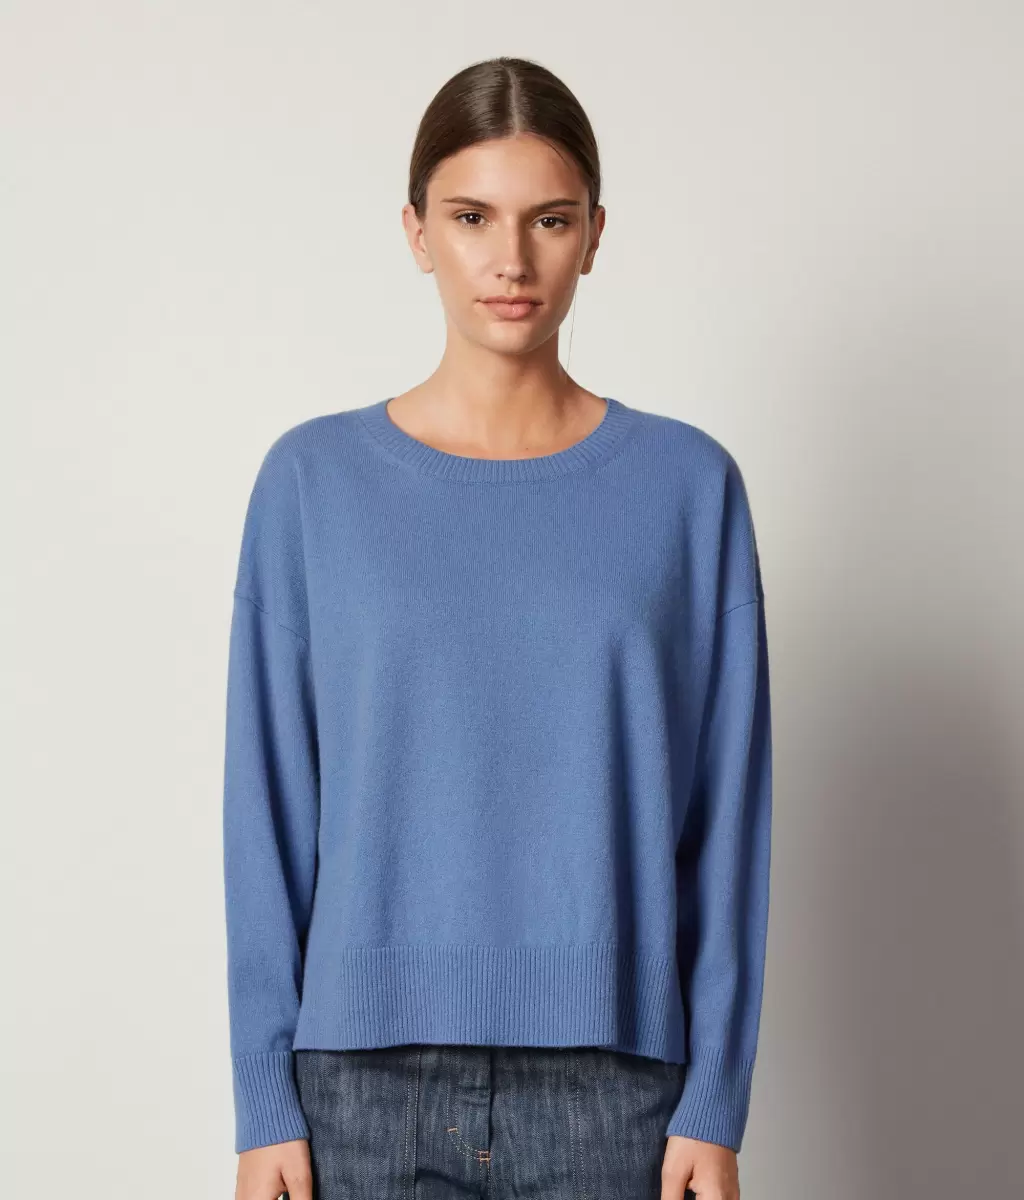 Falconeri Swetry Z Okrągłym Dekoltem Sweter Z Okrągłym Dekoltem I Rozcięciami Z Kaszmiru Ultrasoft Kobieta Light_Blue - 1